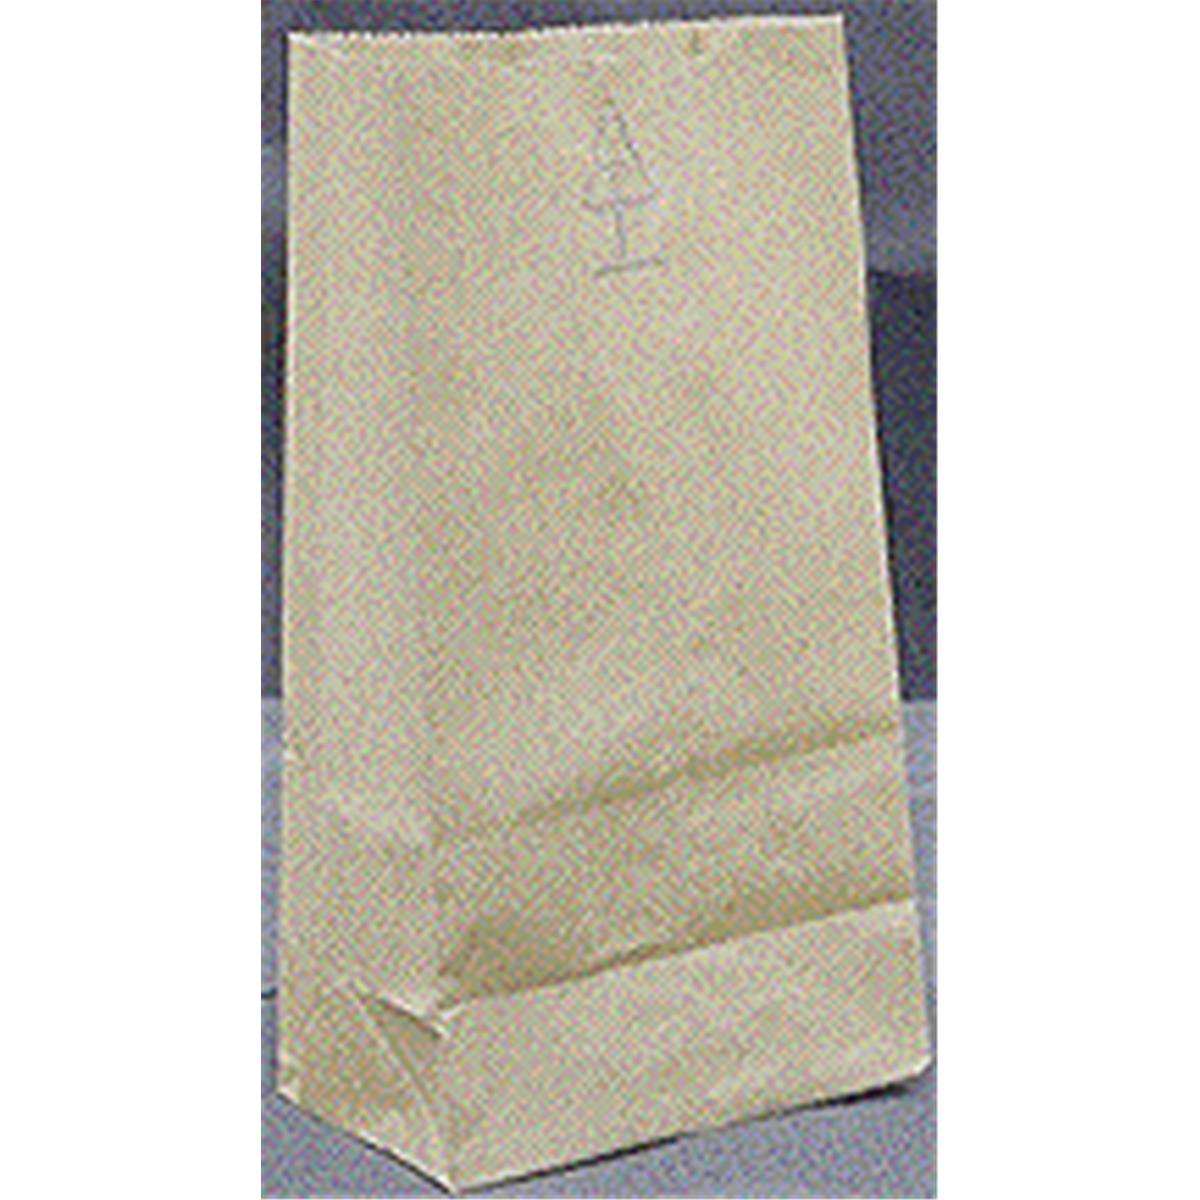 18420 20 Lbs Grocery Bags, Brown Kraft Paper - Pack Of 500